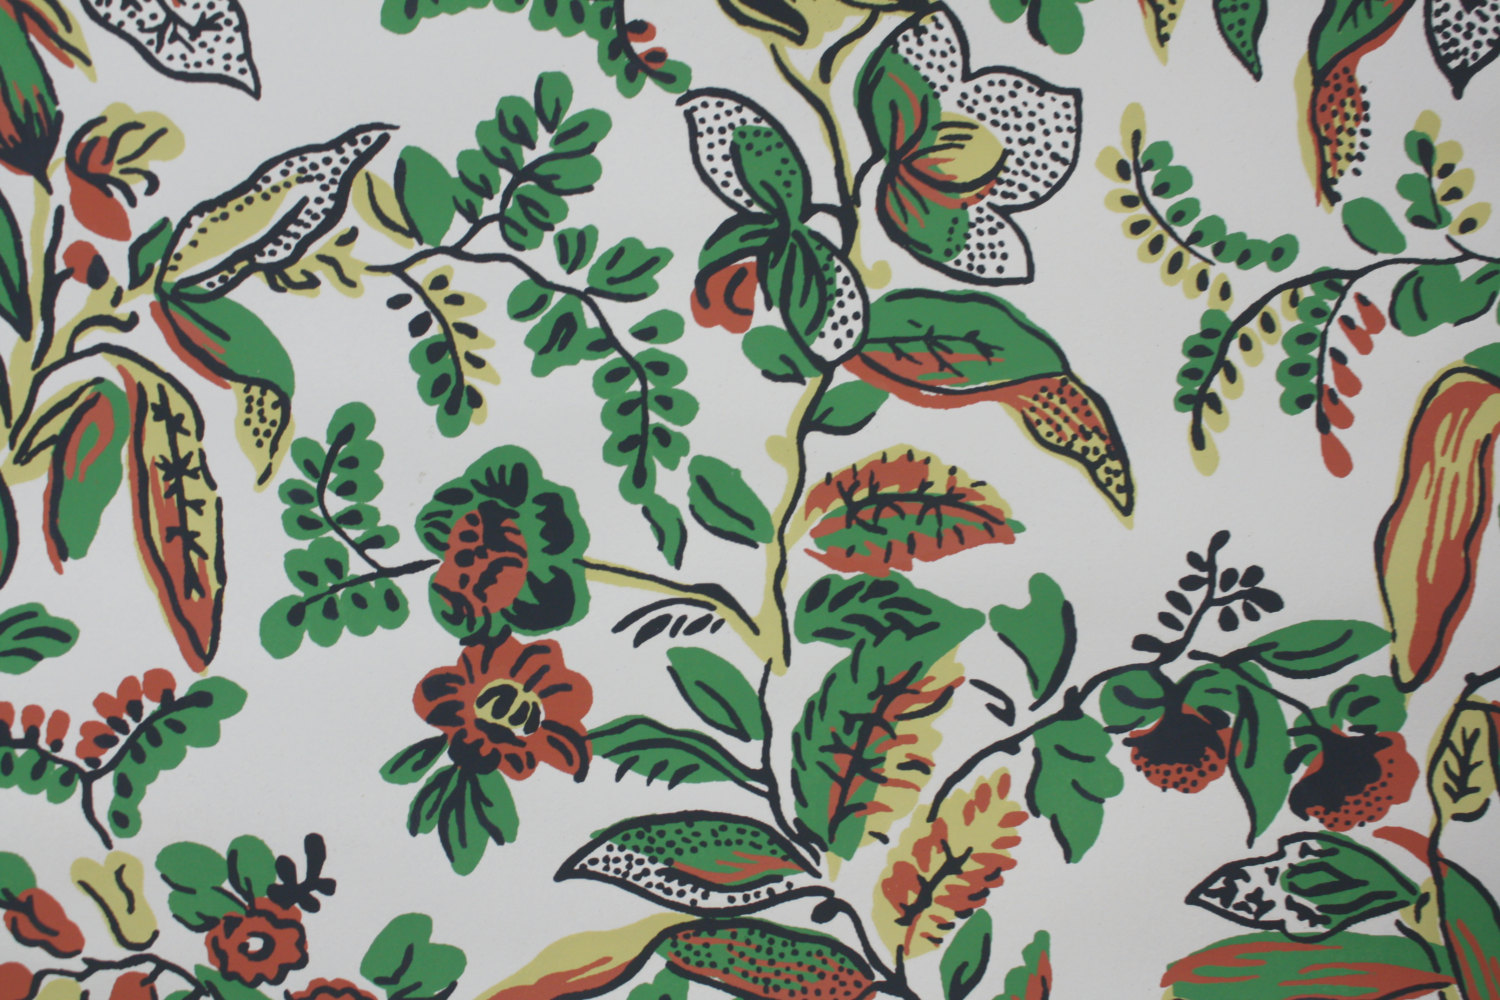 Listing 1950s Vintage Wallpaper Floral